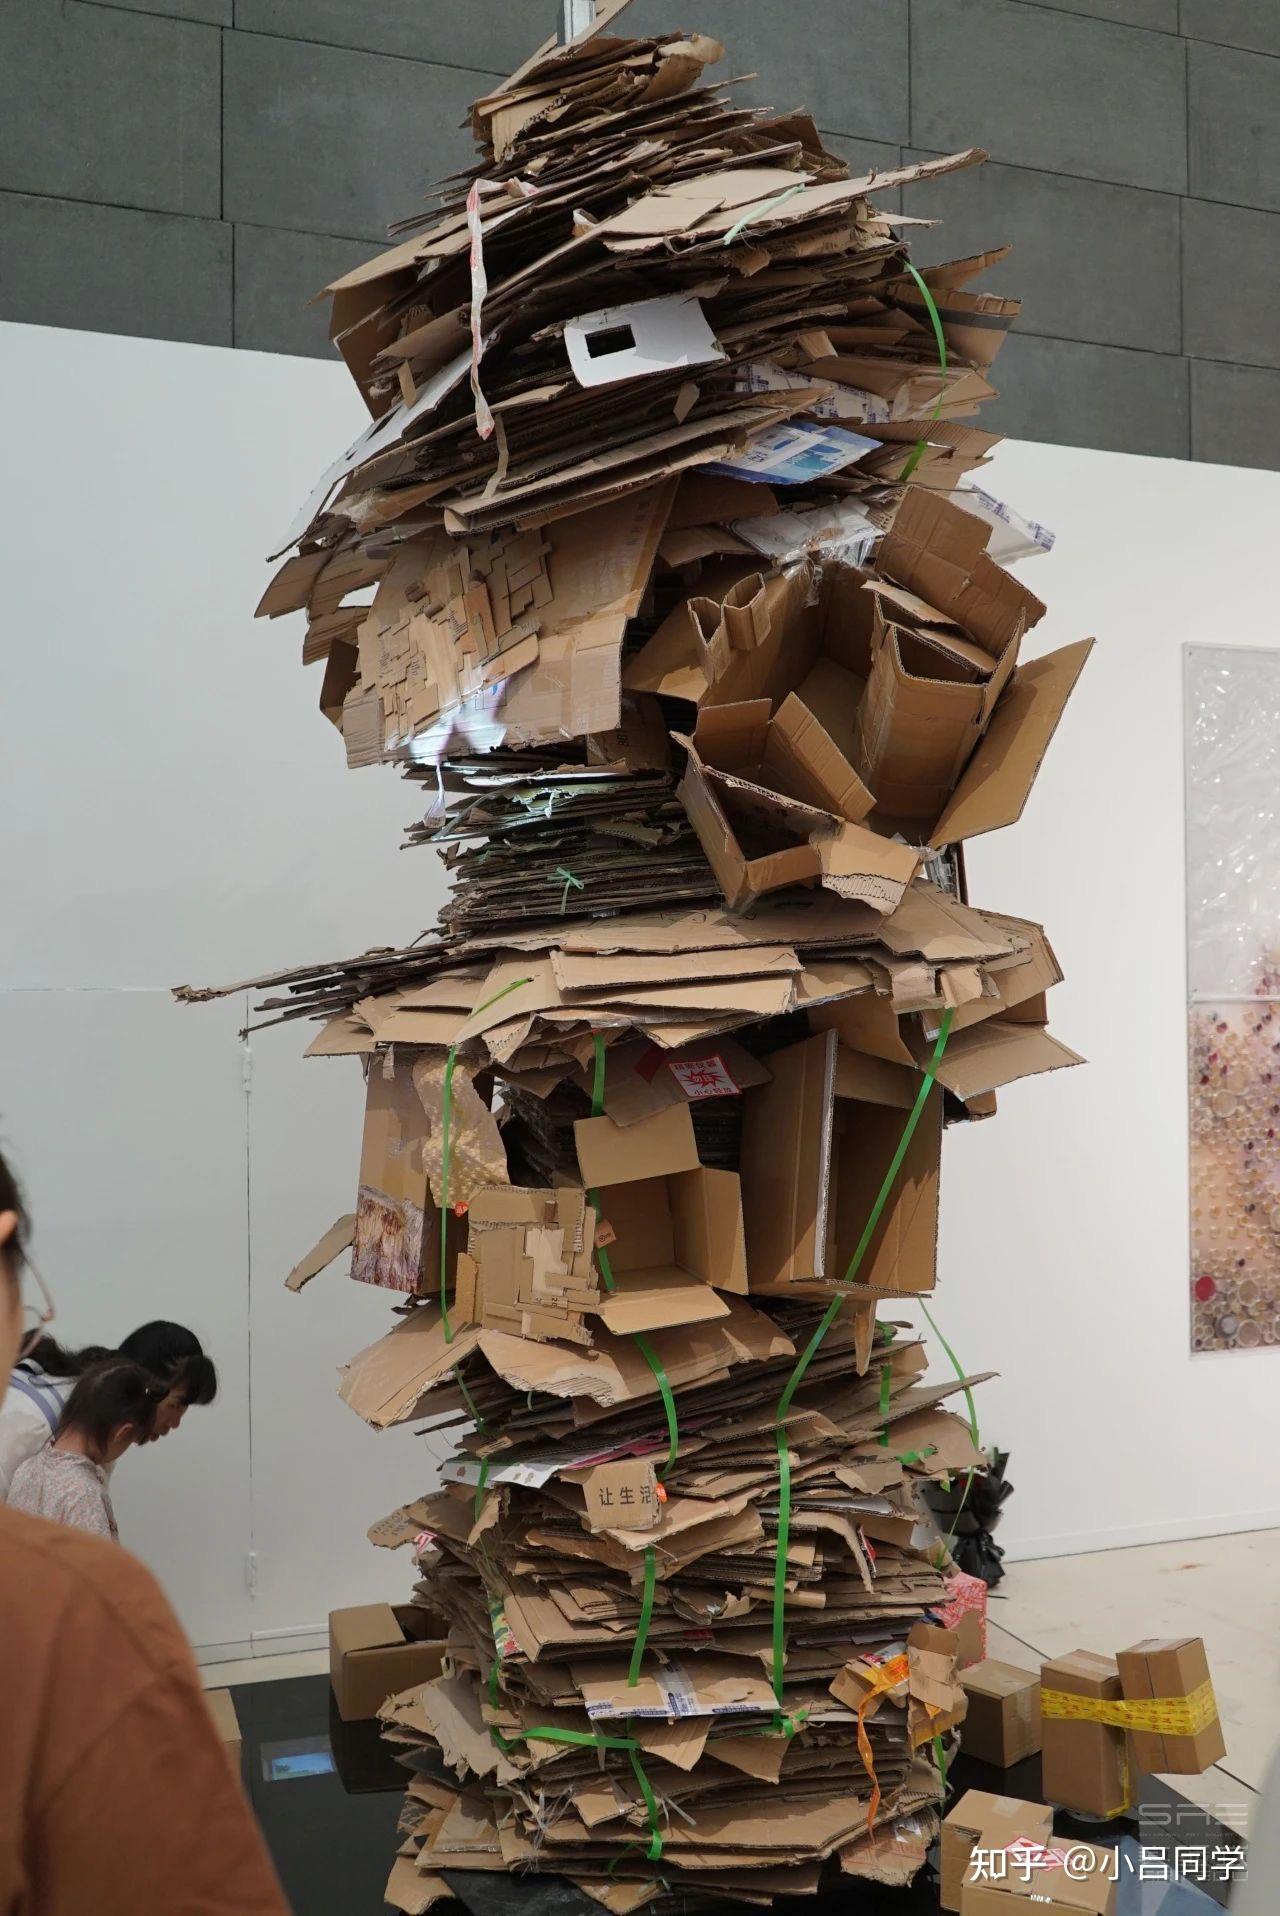 央美毕业展作品《超级蜂巢》被网友吐槽一堆废纸壳 ,作者称作品造价